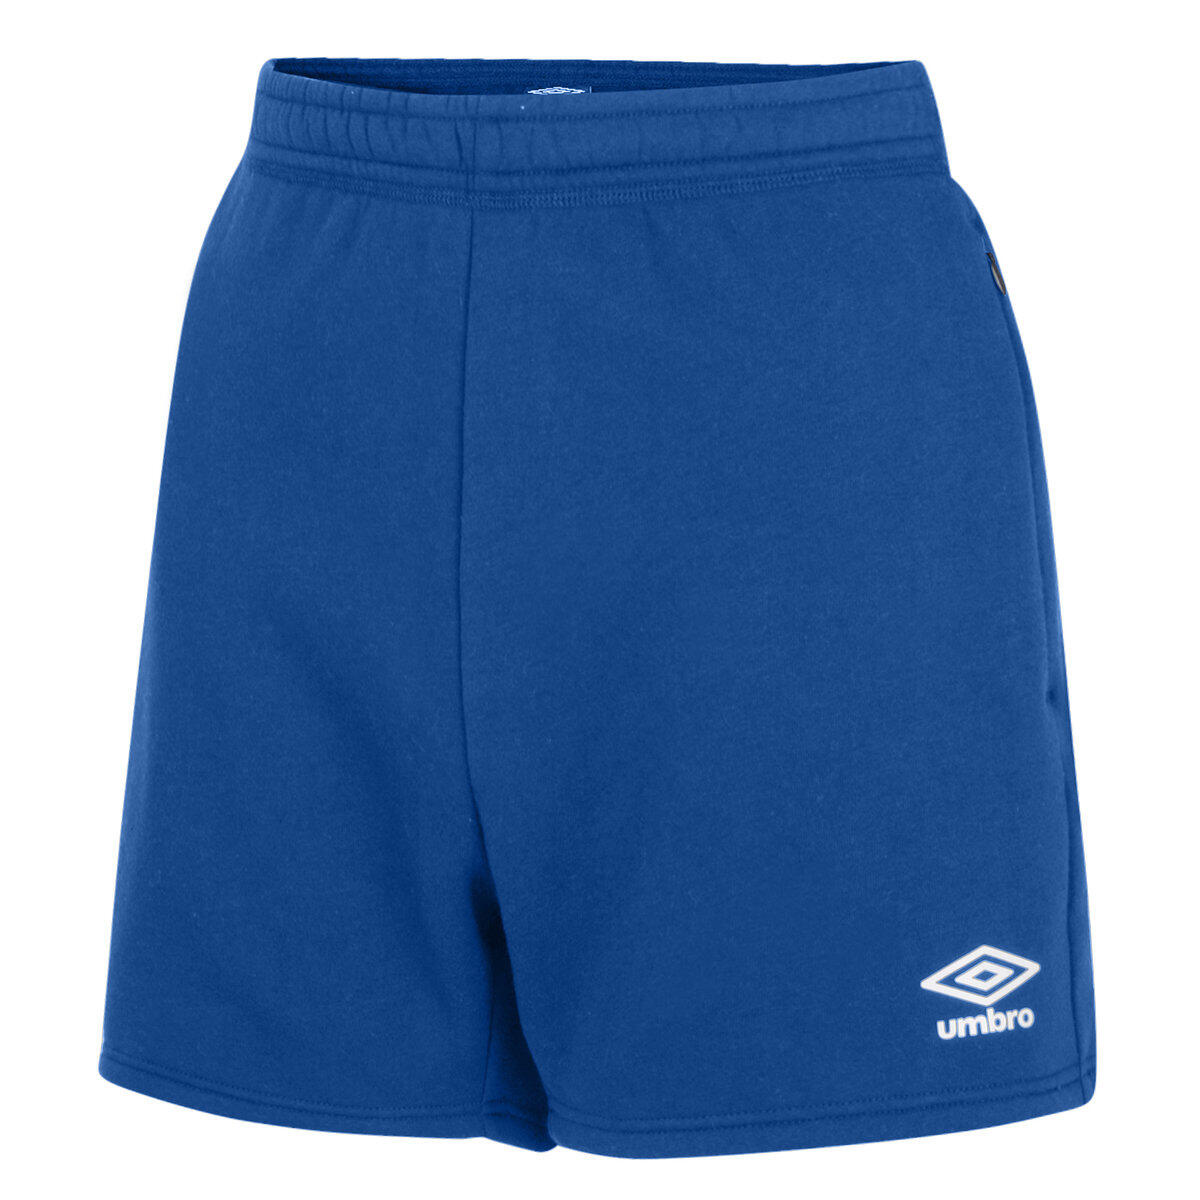 UMBRO Womens/Ladies Club Leisure Shorts (Royal Blue/White)